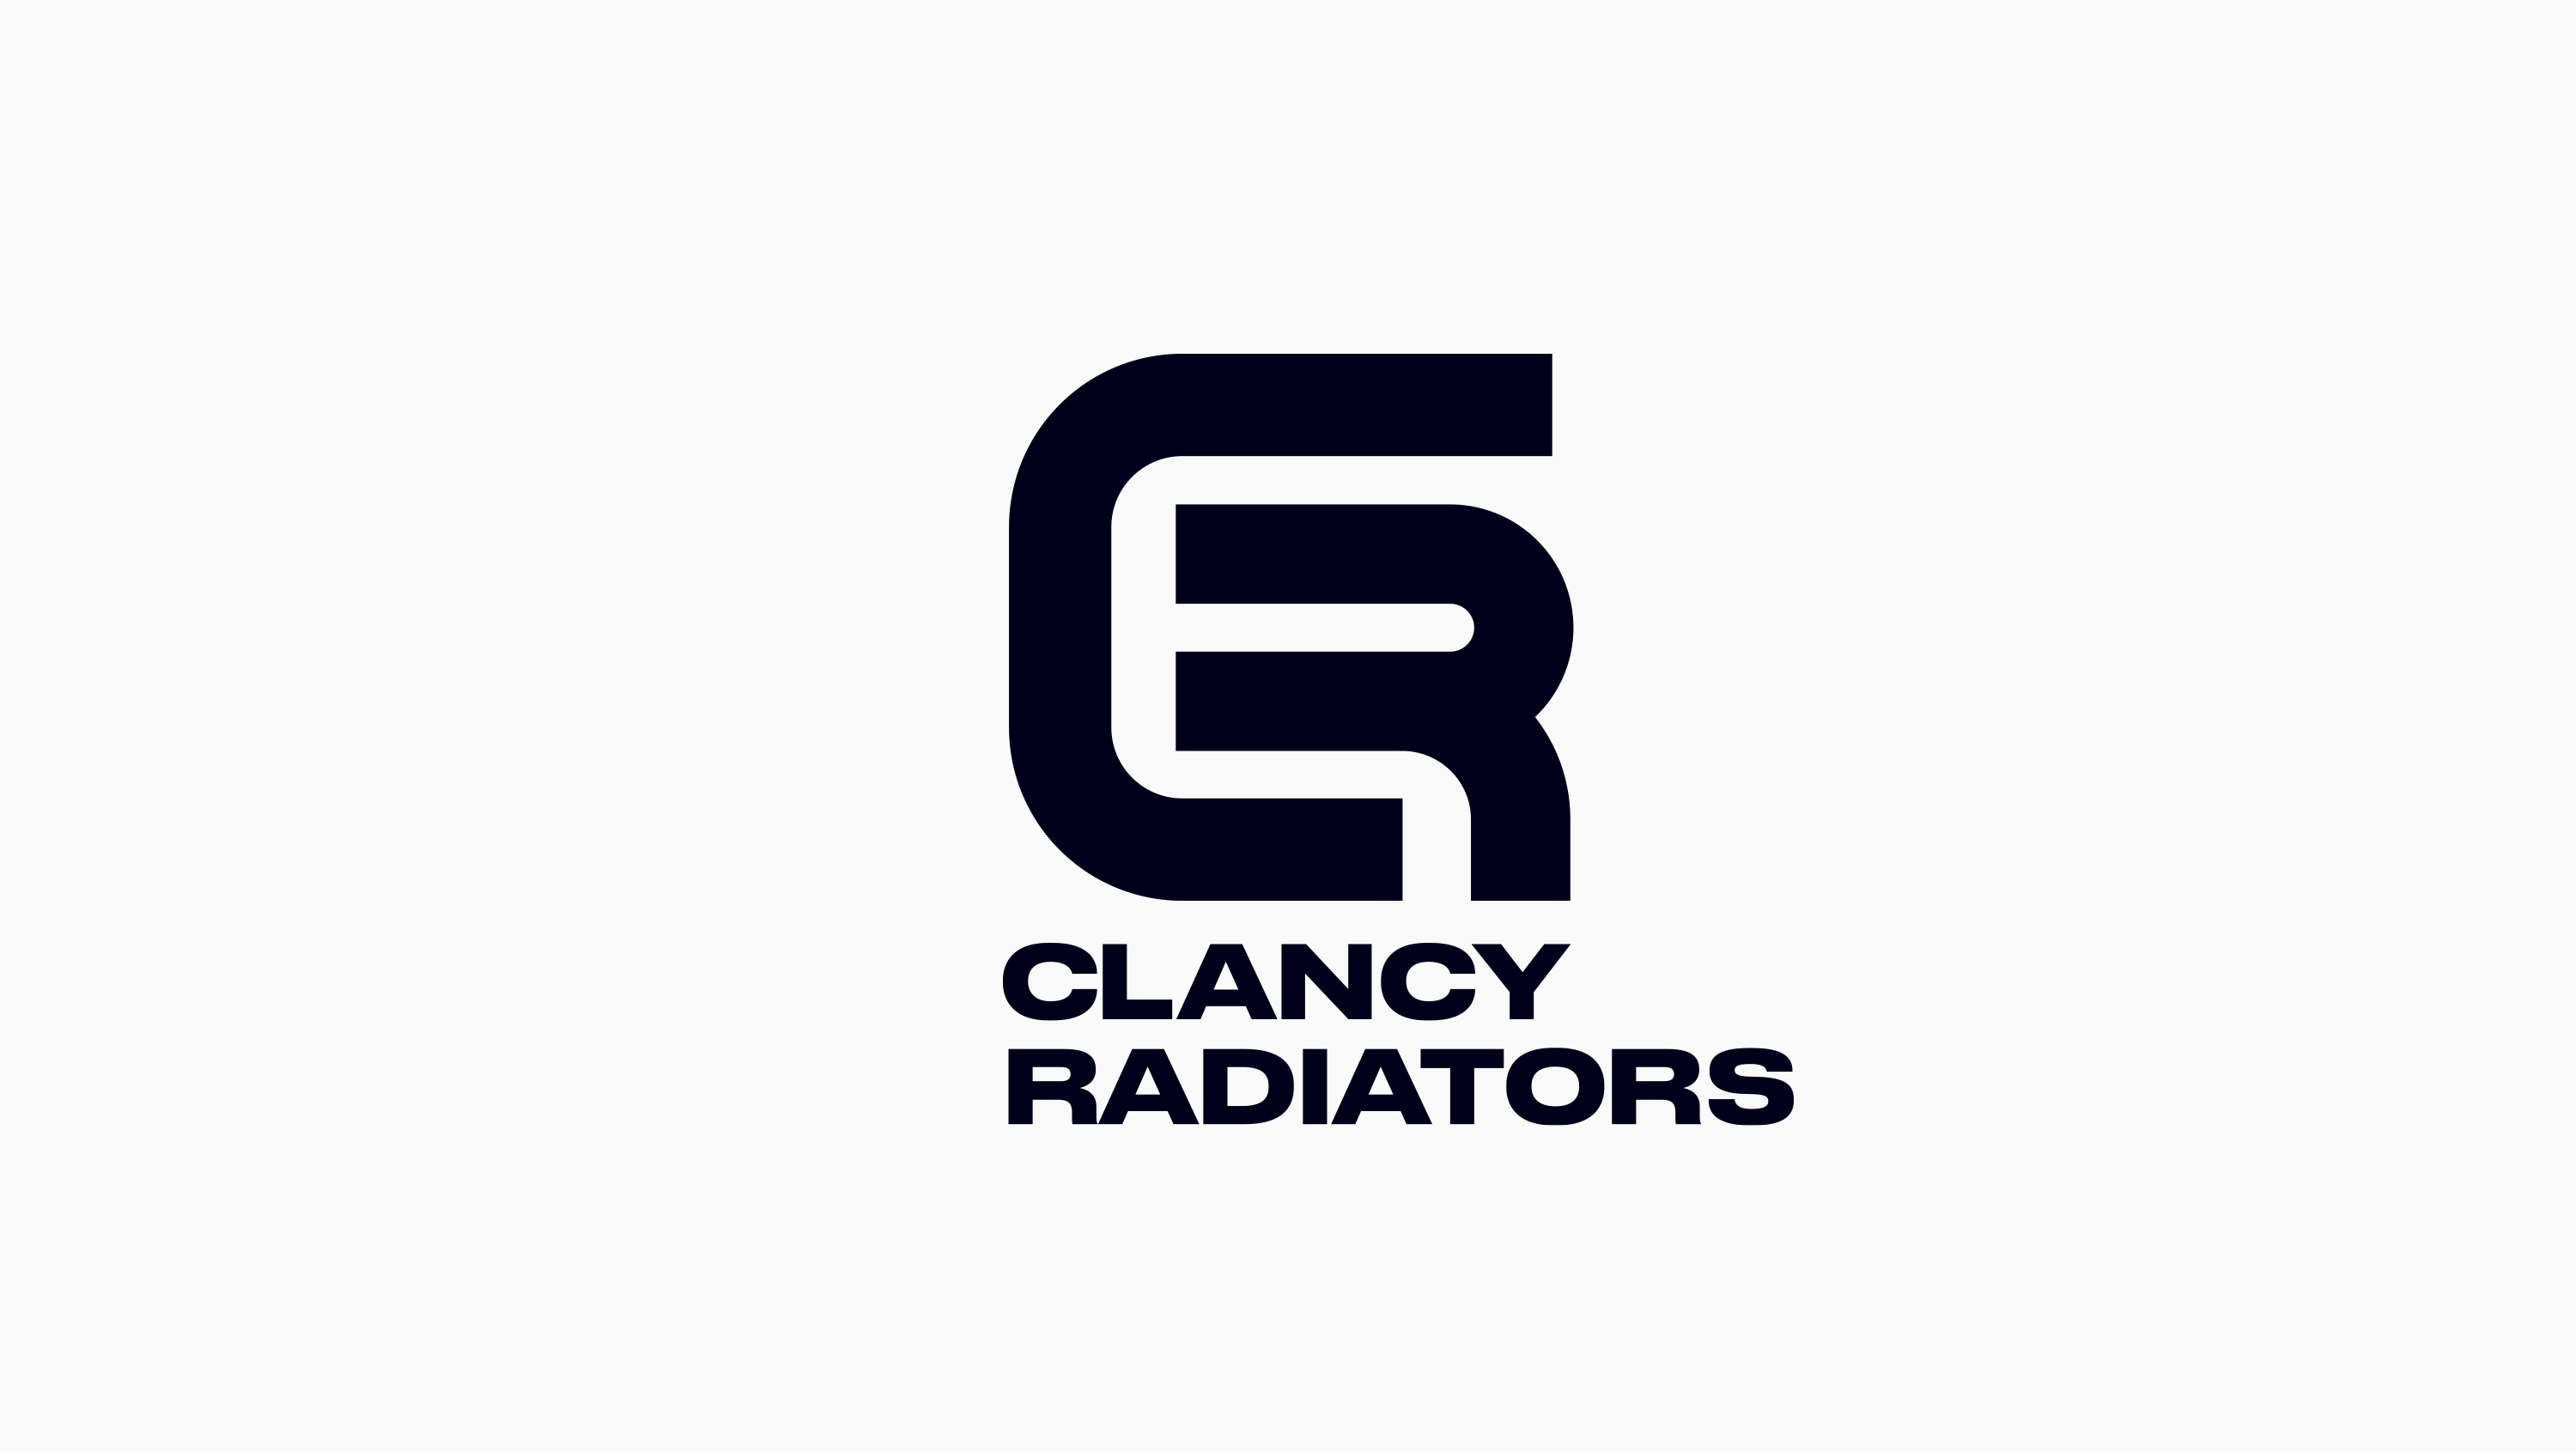 JamJo Logo Design Services - Clancy Radiators